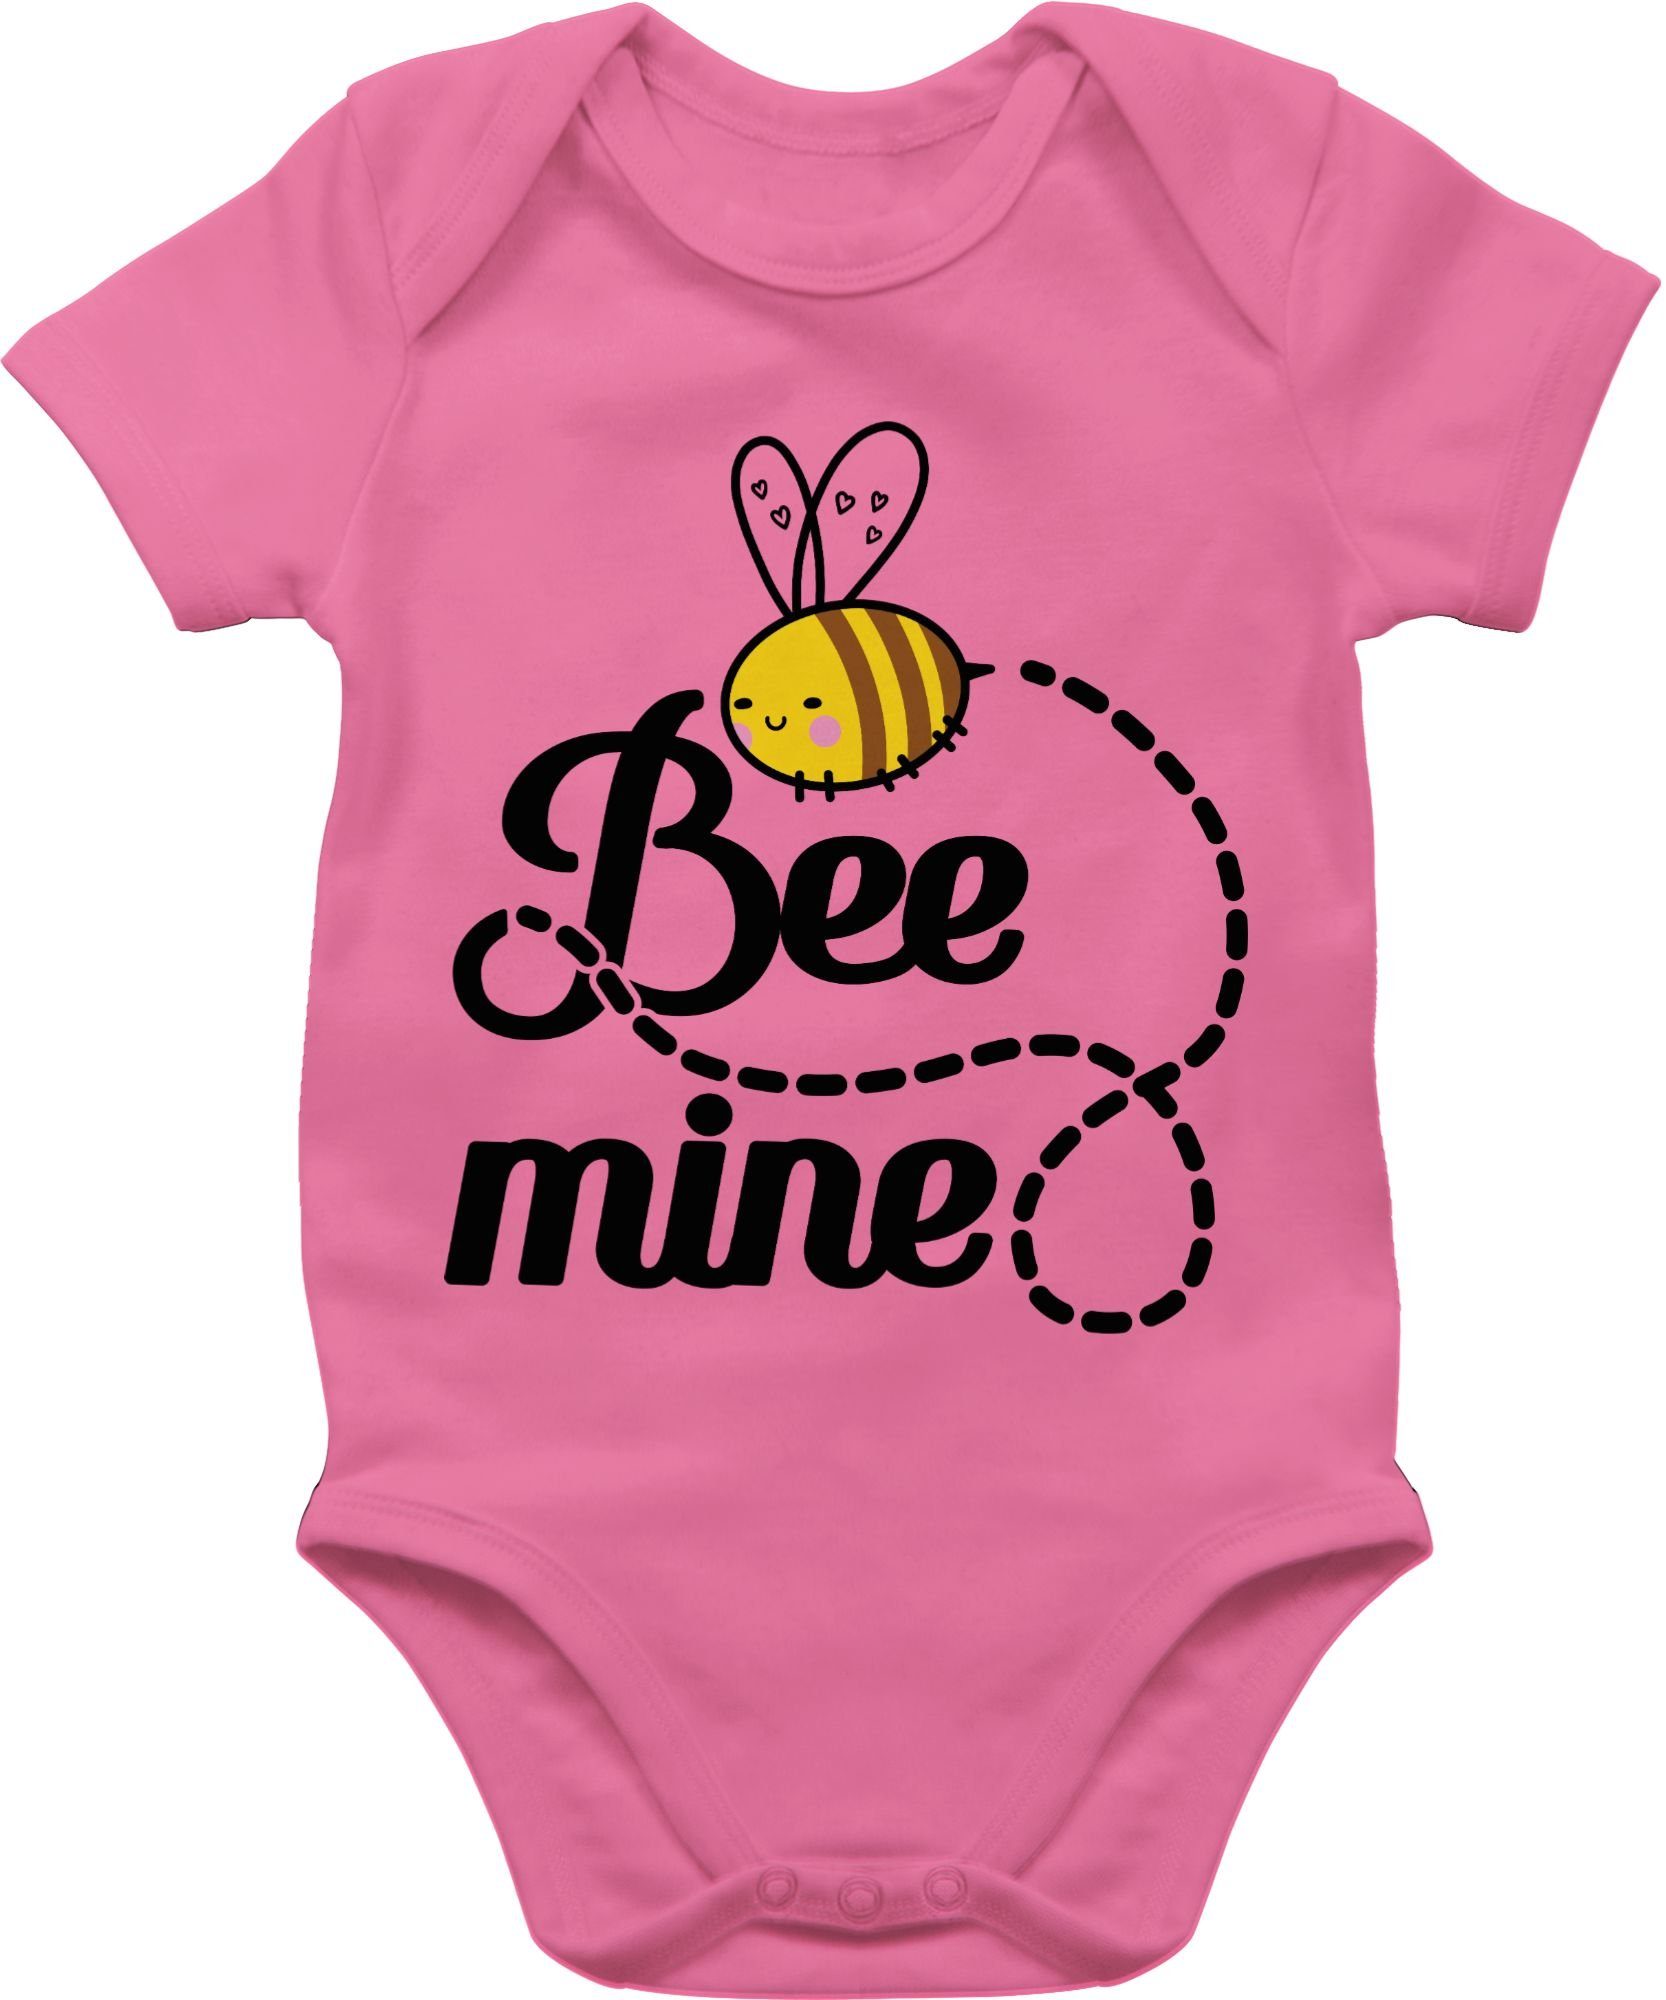 Shirtracer Shirtbody Bee mine mit Biene - Valentinstag Geschenk Baby - Baby  Body Kurzarm bienen body baby - valentinstags geschenke - strampler biene